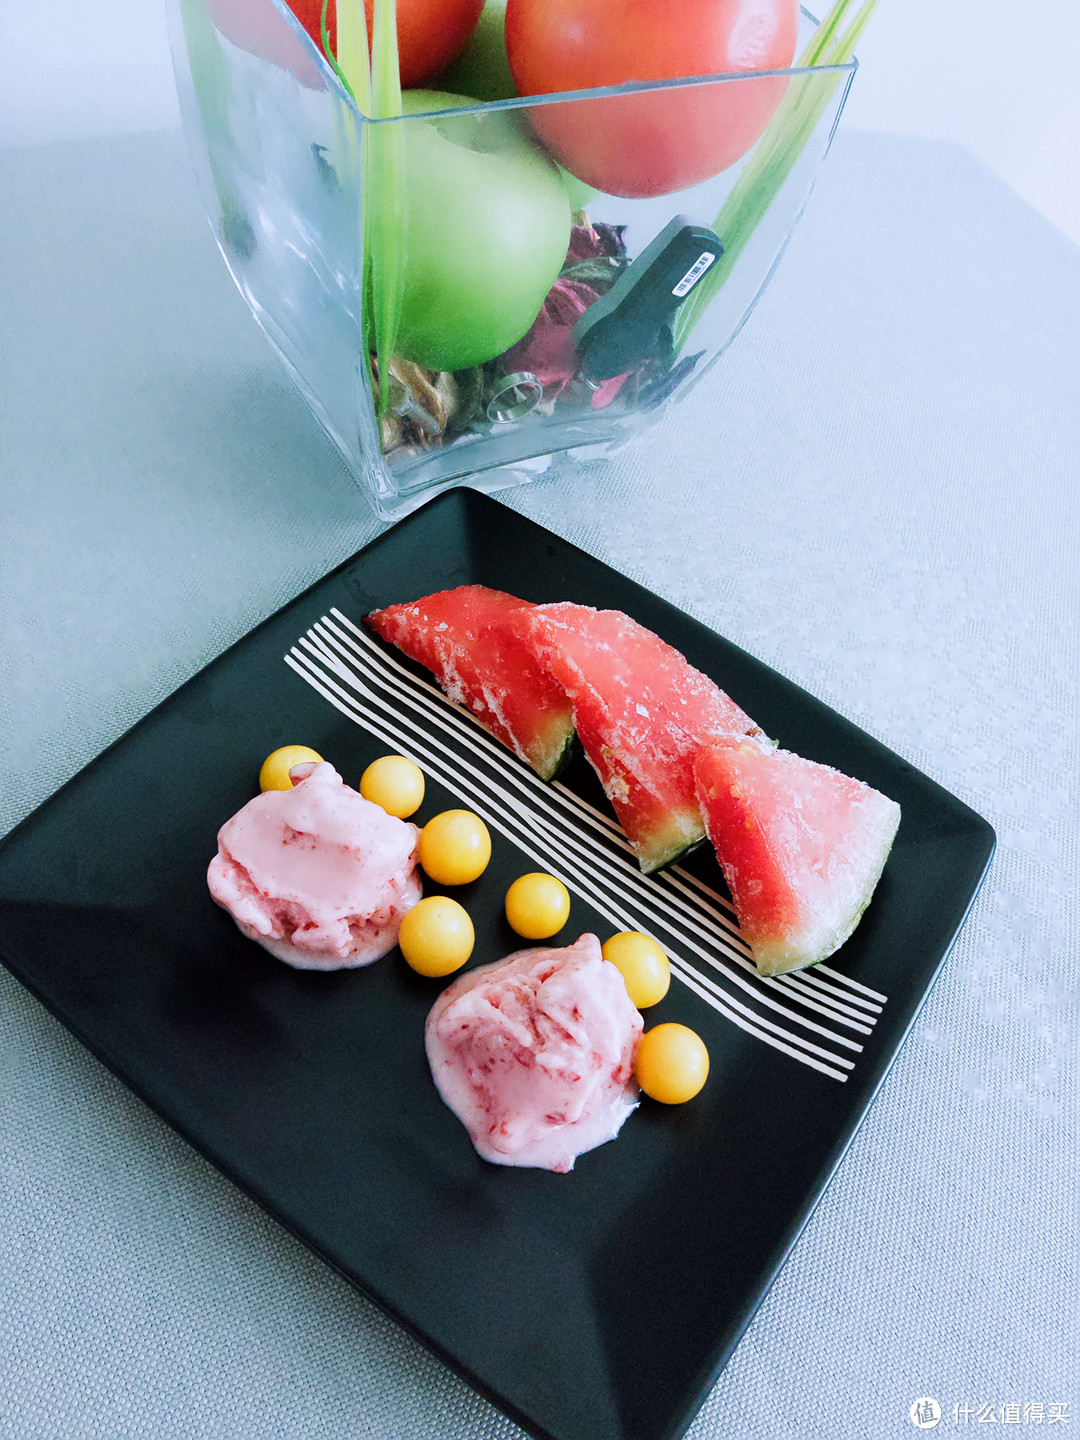 #一周热征#消暑美食#冰爽水果冻起来！让最简单的食材成为高大上的冰品~